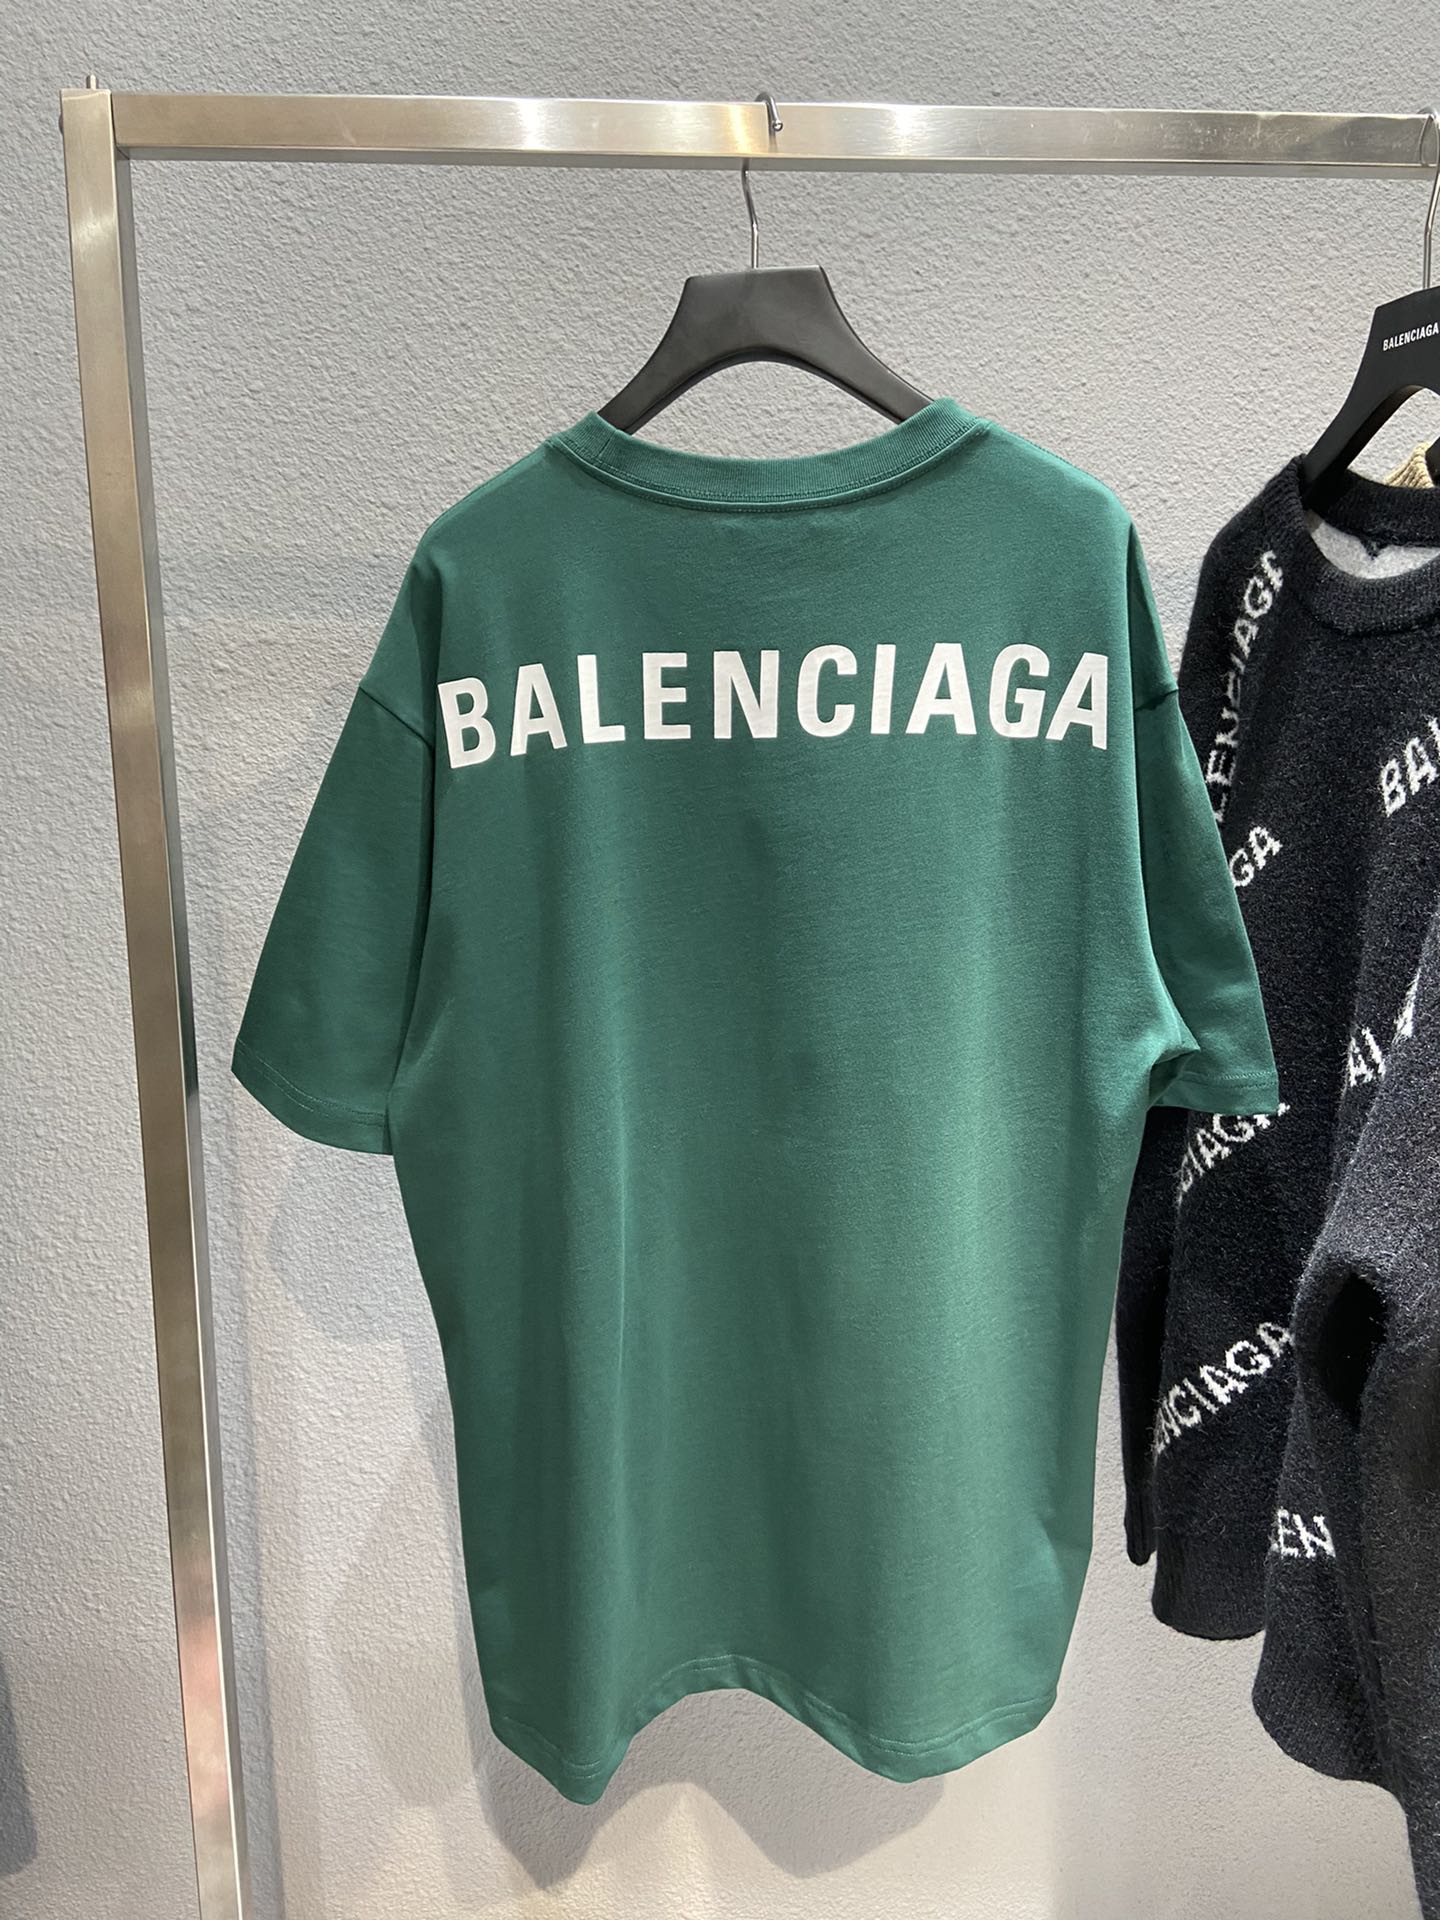 Koy Janny Shop  Balenciaga Basic  1 mặt